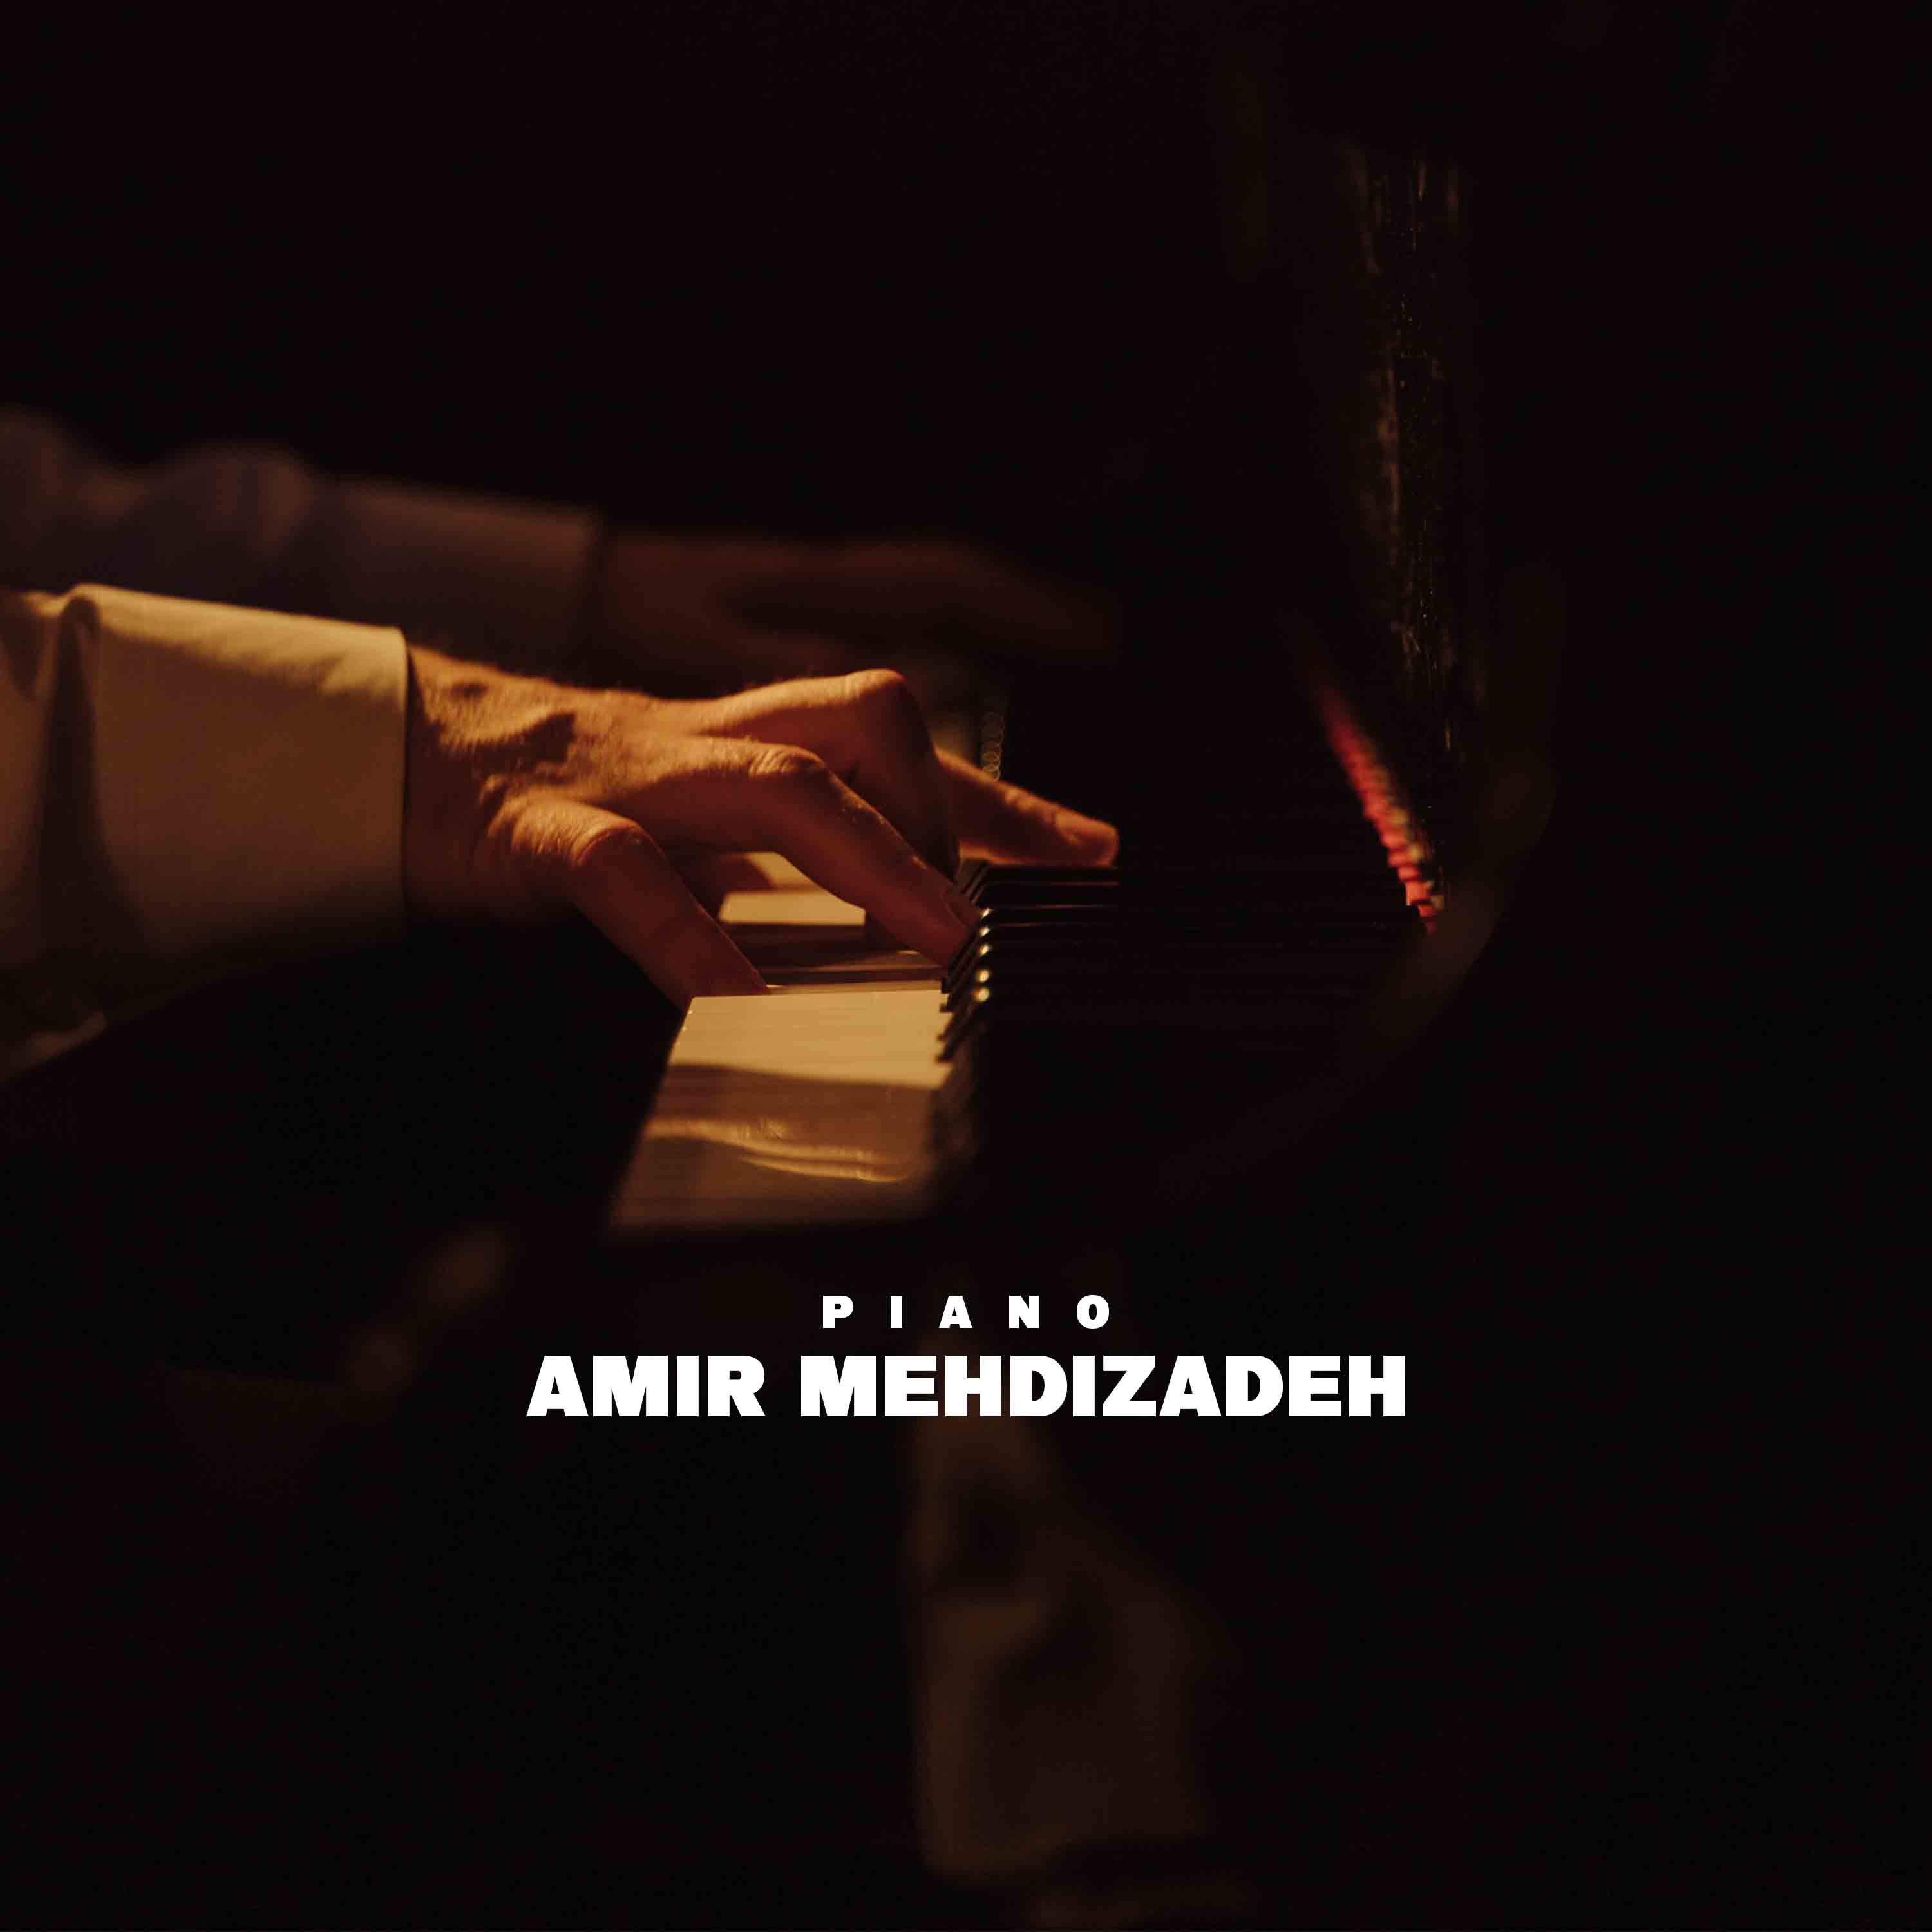 Amir Mehdizadeh